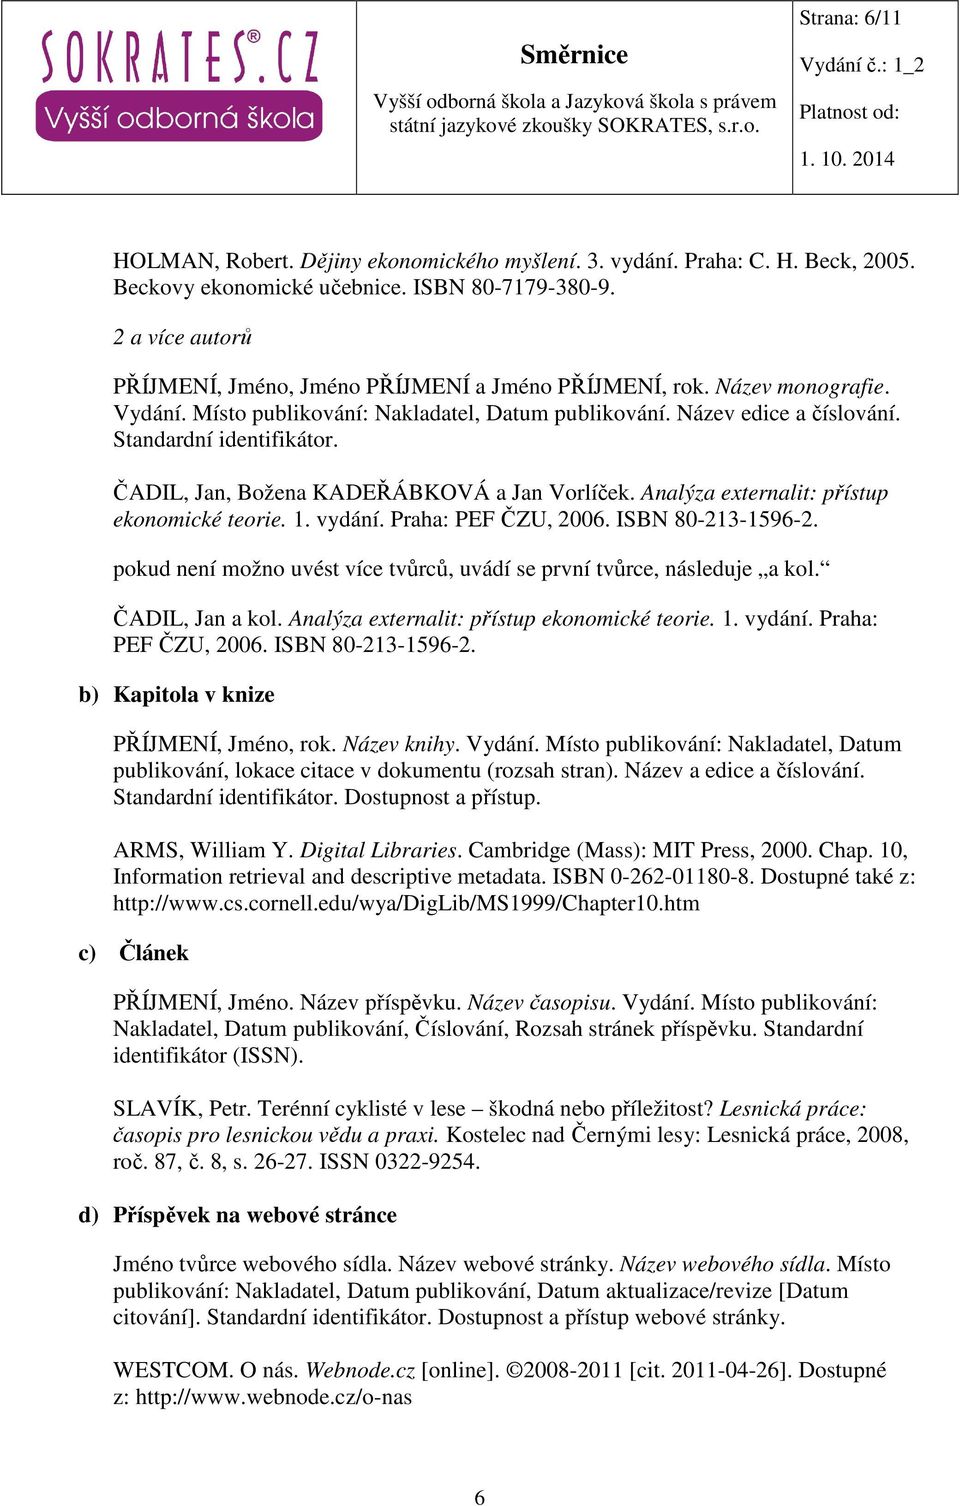 ČADIL, Jan, Božena KADEŘÁBKOVÁ a Jan Vorlíček. Analýza externalit: přístup ekonomické teorie. 1. vydání. Praha: PEF ČZU, 2006. ISBN 80-213-1596-2.